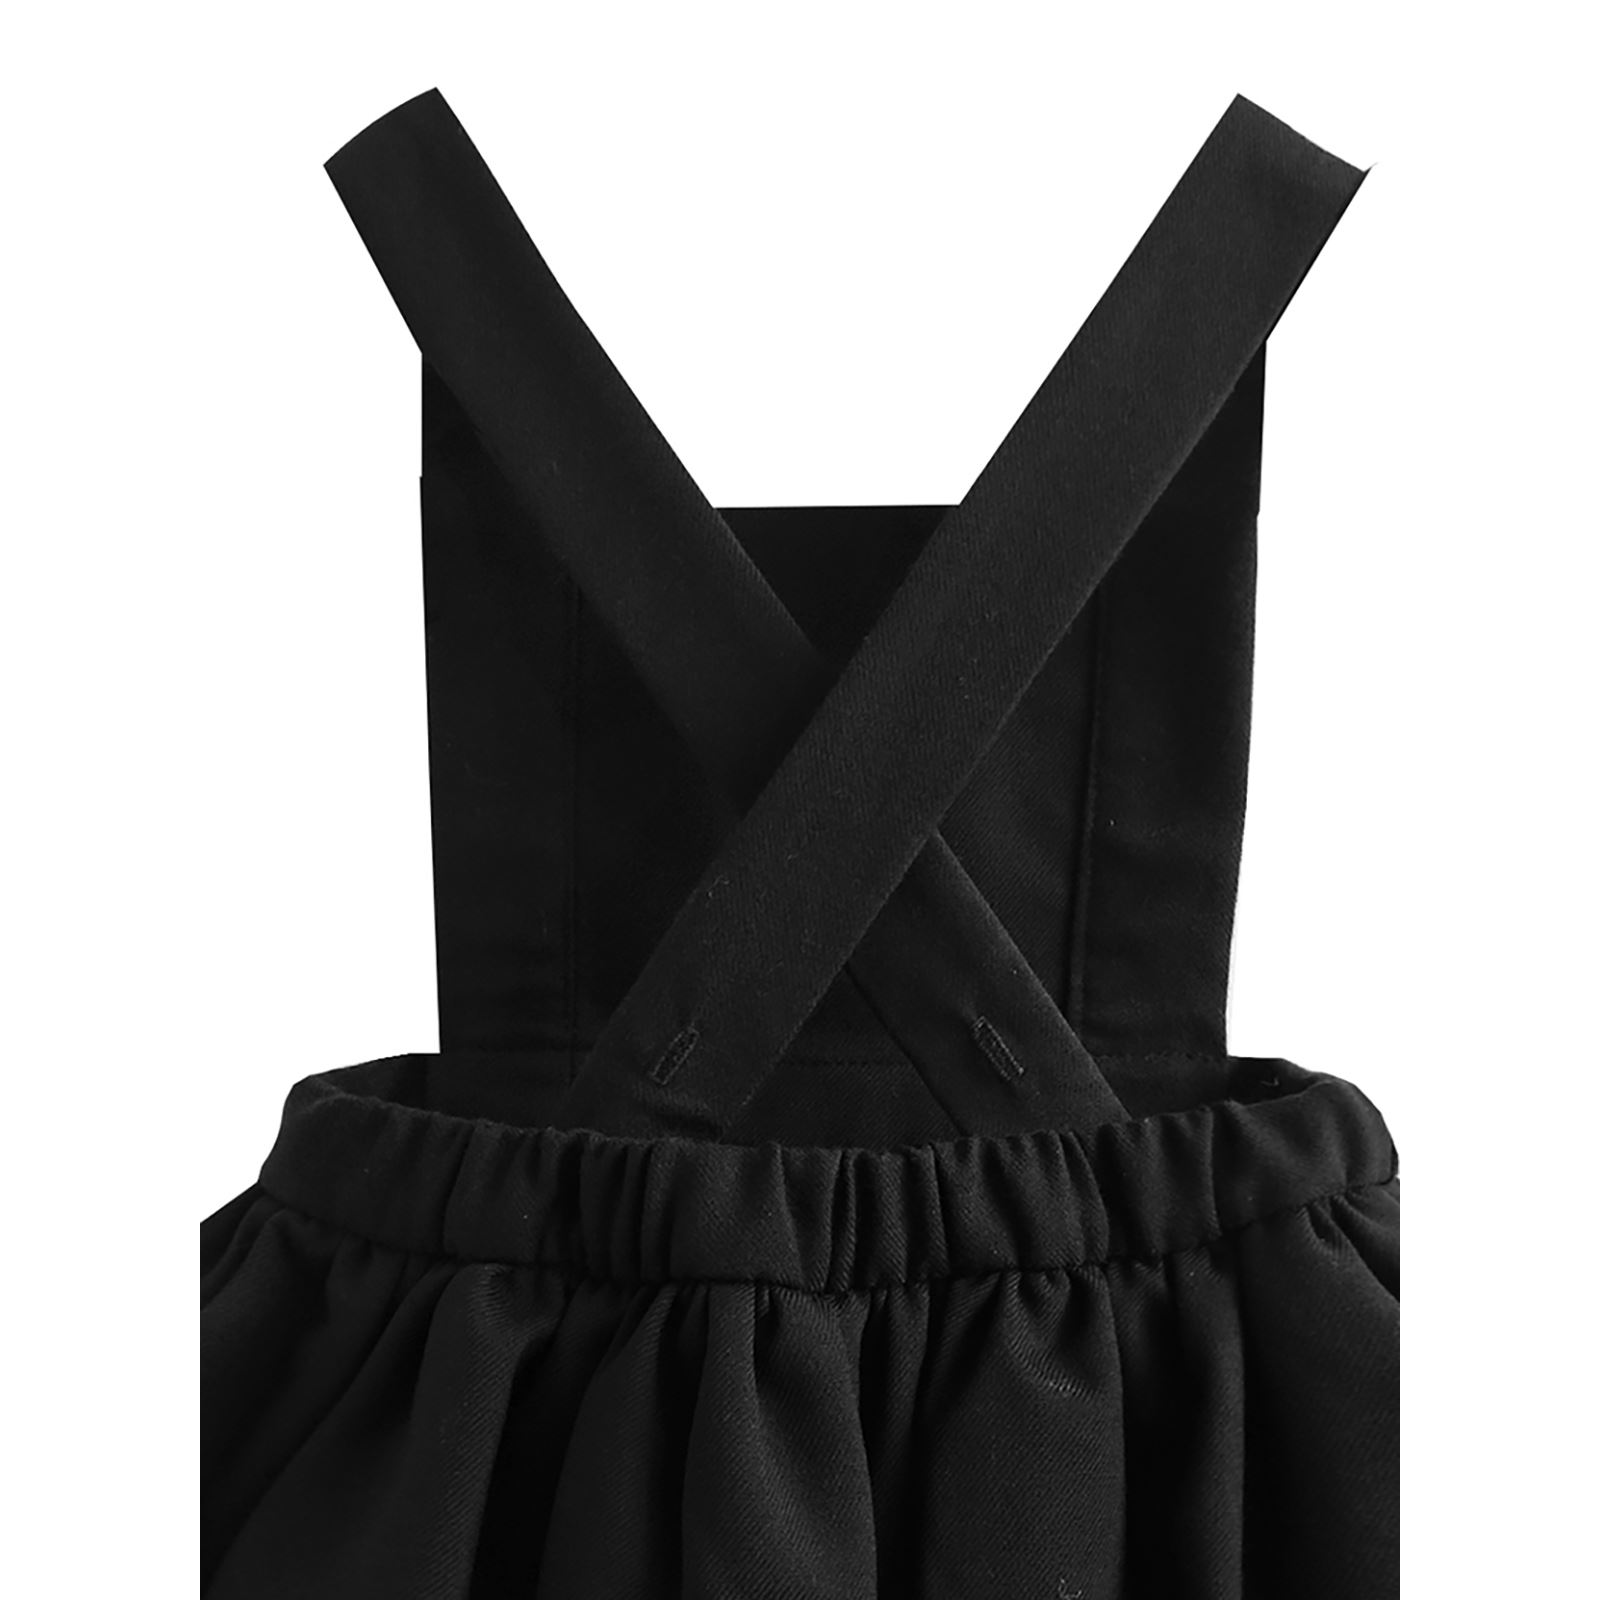 Shecco Babba Kız Çocuk Tütü Elbise Taç Takım 6-10 Yaş Siyah